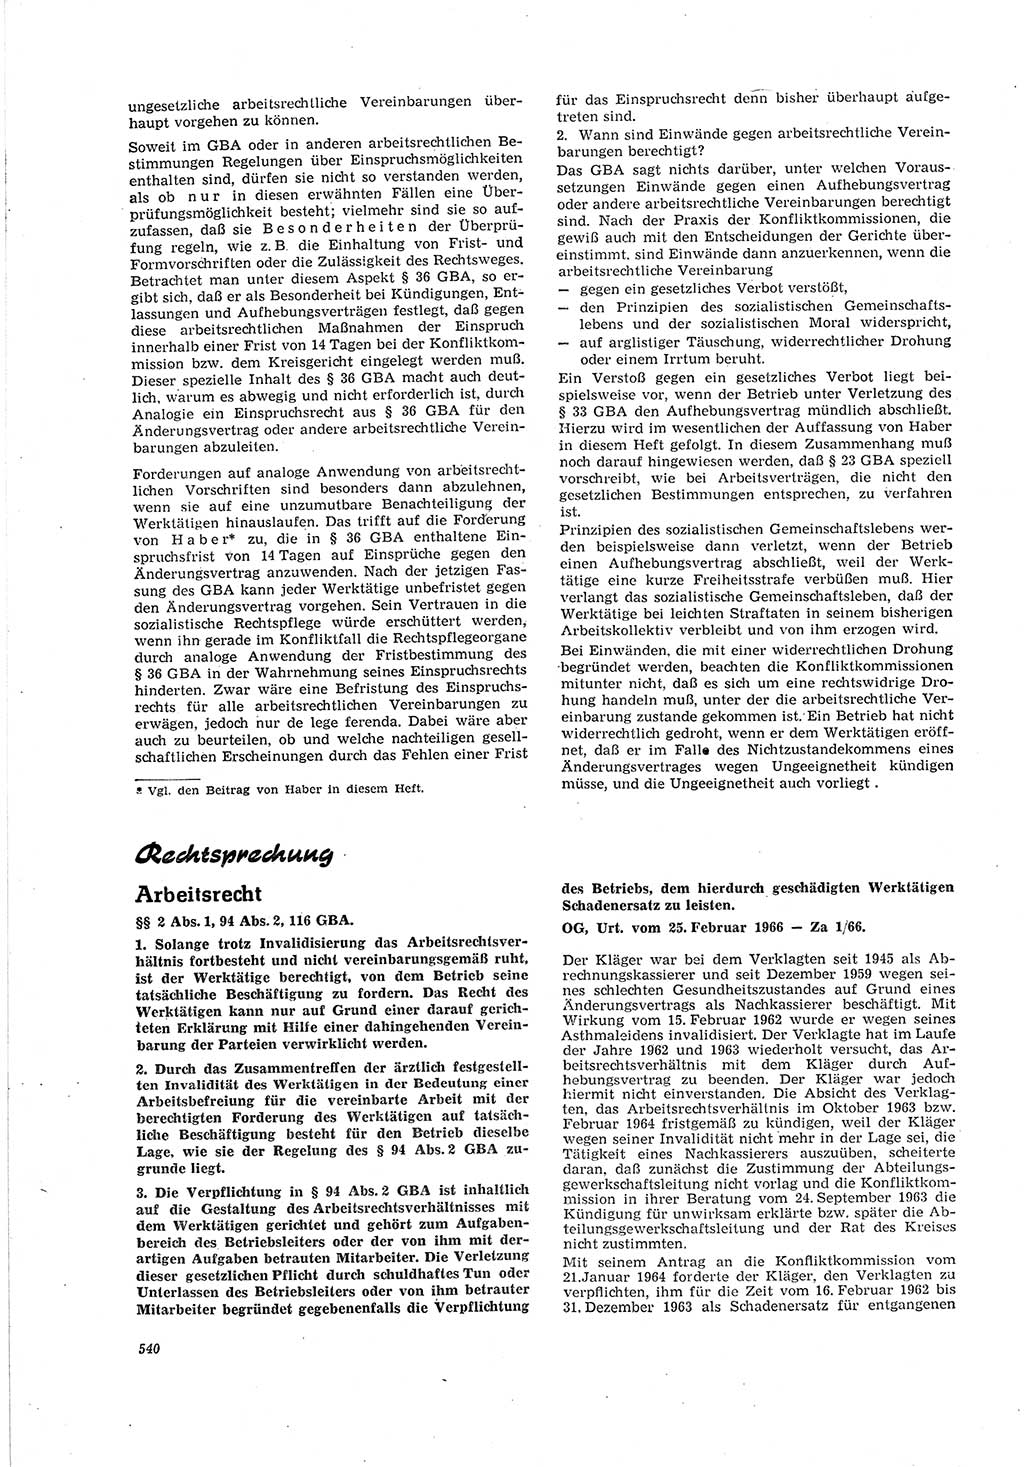 Neue Justiz (NJ), Zeitschrift für Recht und Rechtswissenschaft [Deutsche Demokratische Republik (DDR)], 20. Jahrgang 1966, Seite 540 (NJ DDR 1966, S. 540)